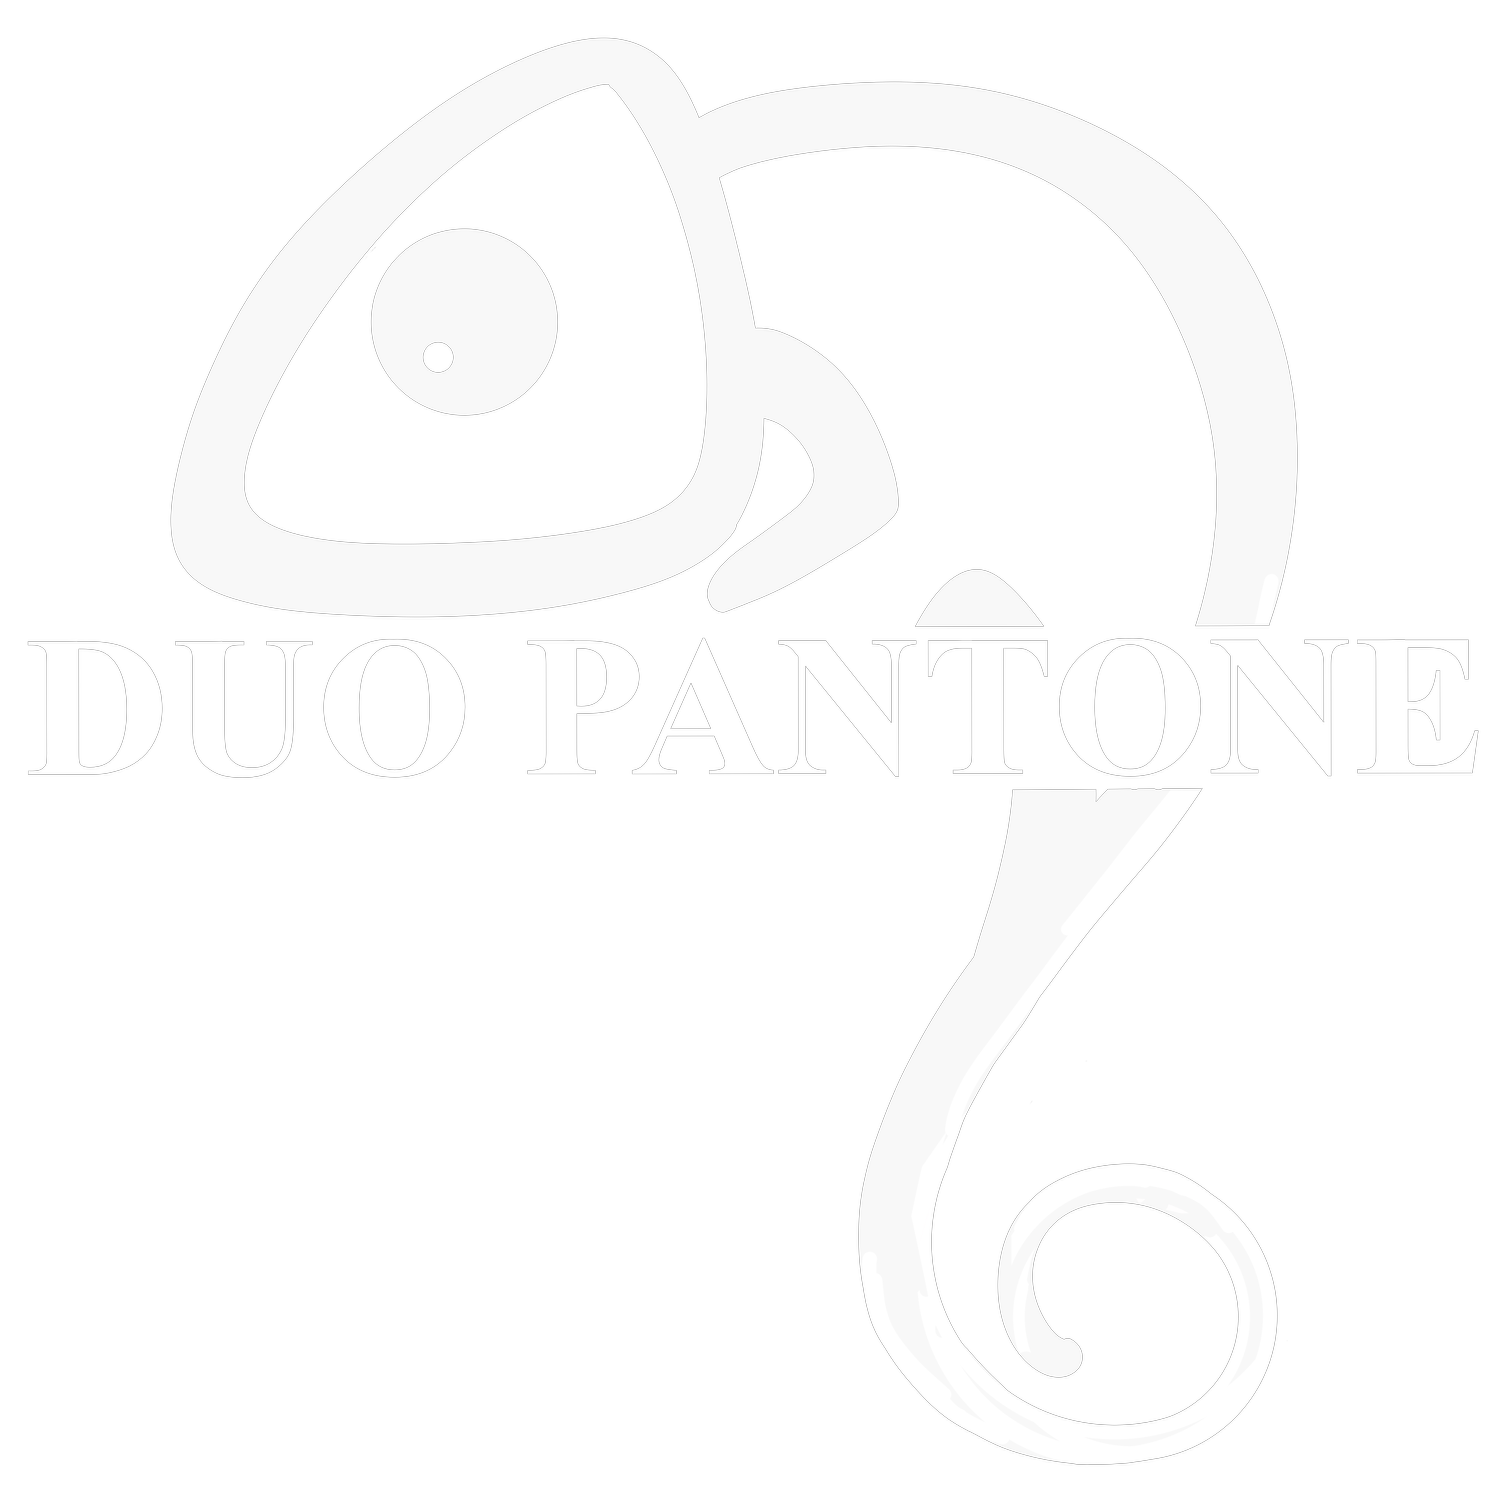   Duo Pantone